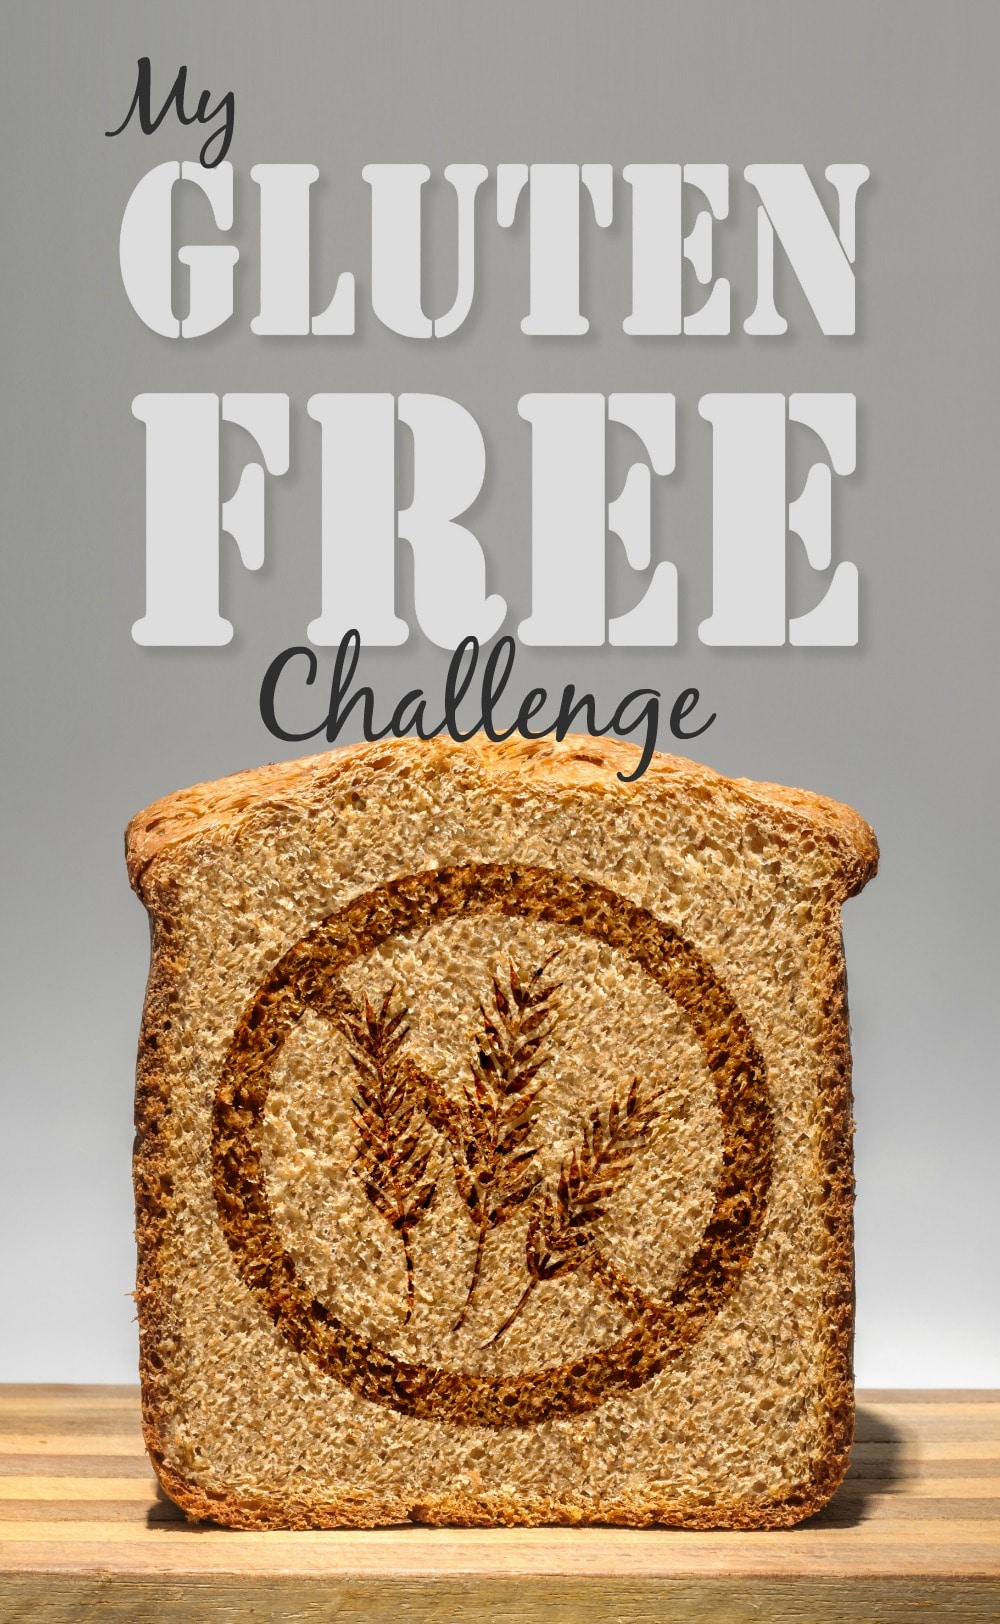 Gluten Free Challenge